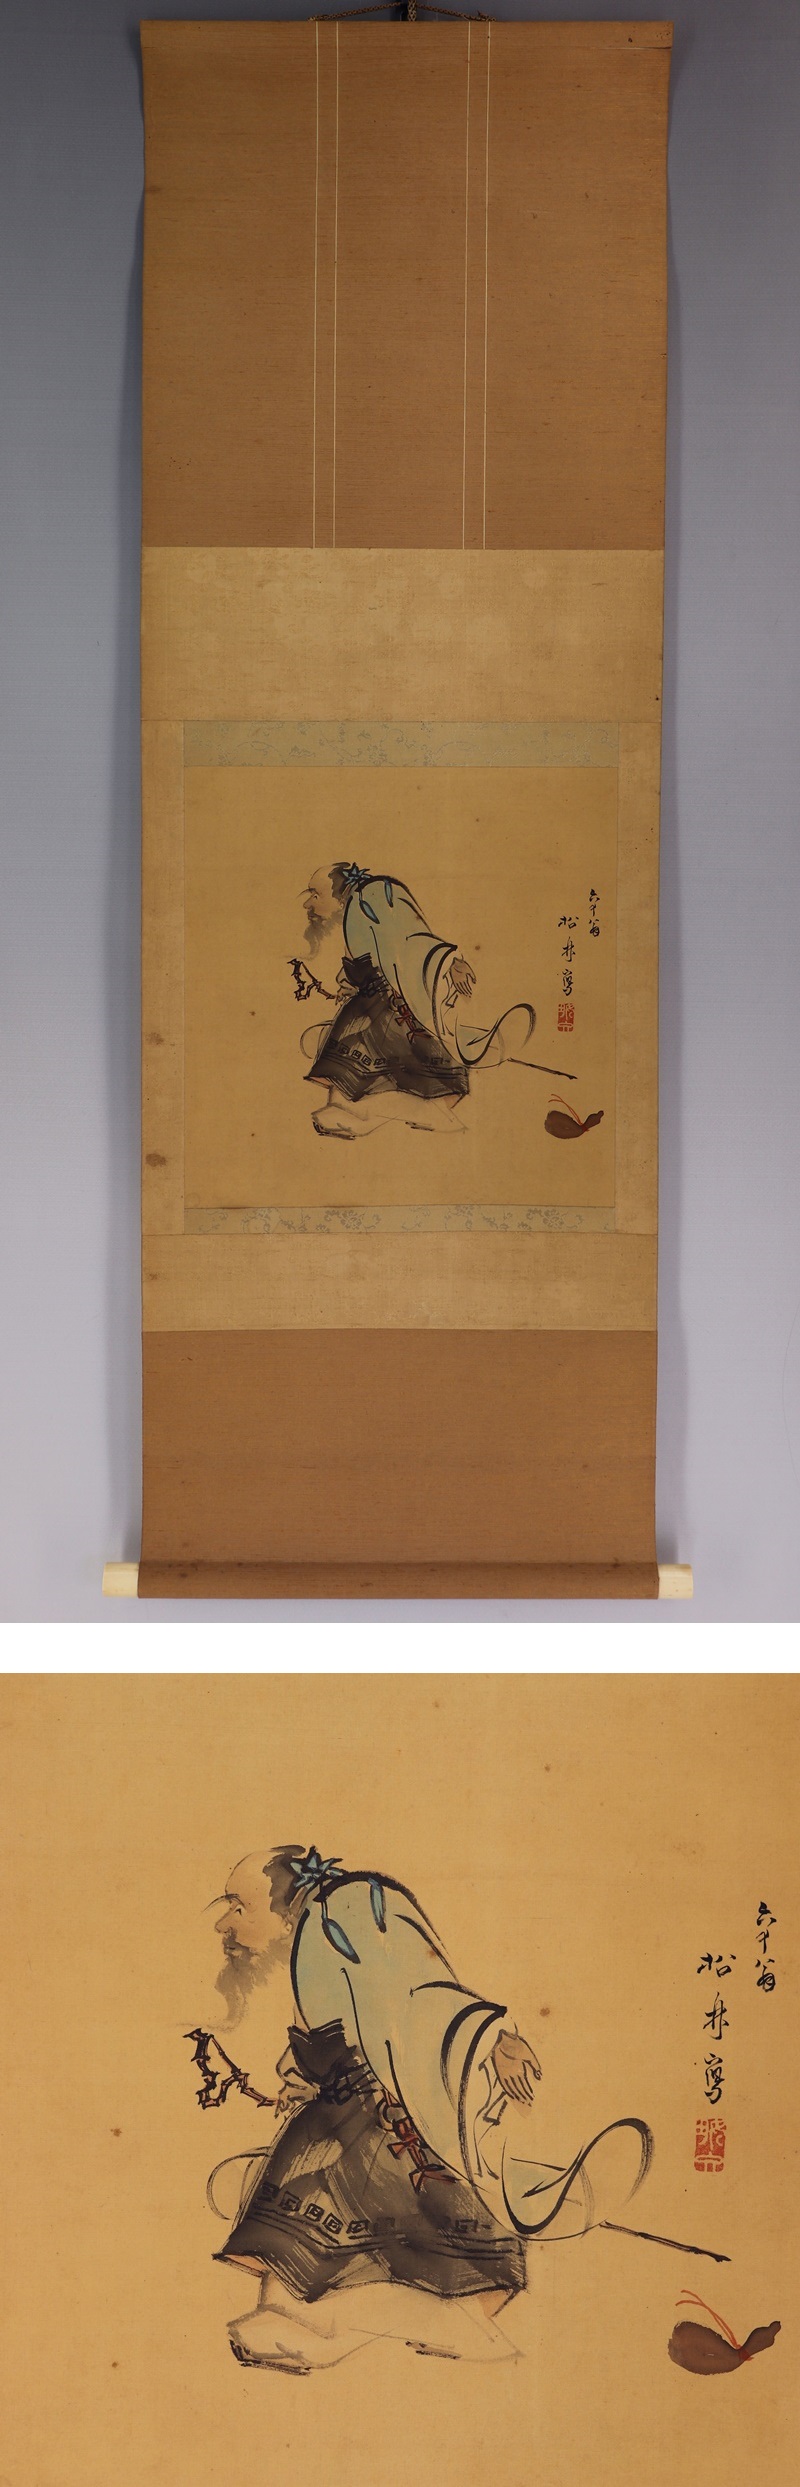 直売公式藤井松林◆絹本◆識箱◆掛軸 v10126 人物、菩薩